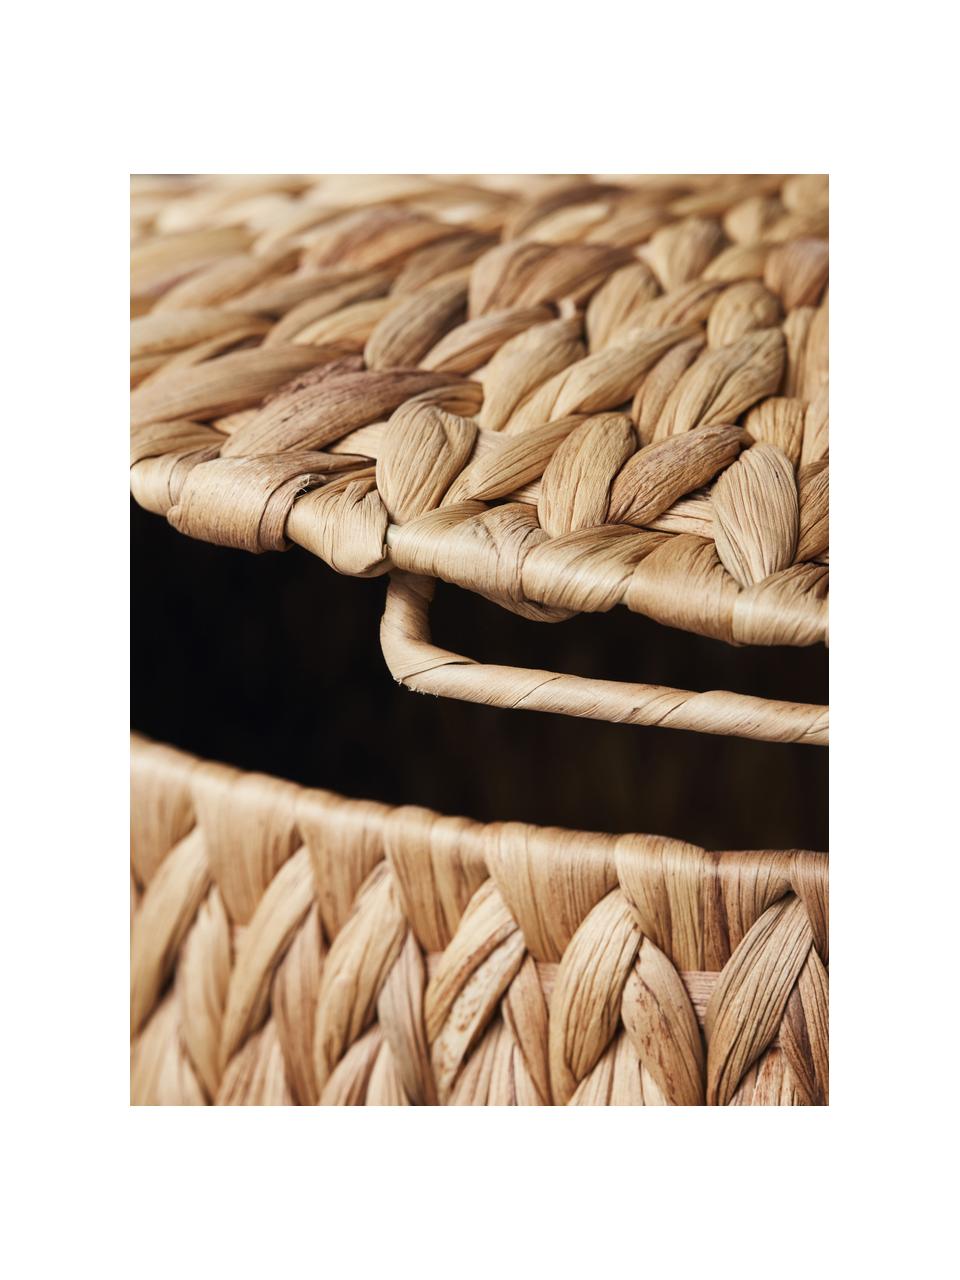 Set de cestas Rata, 3 uds., Cesta: jacintos de agua, Estructura: alambre de acero, Marrón, Set de diferentes tamaños